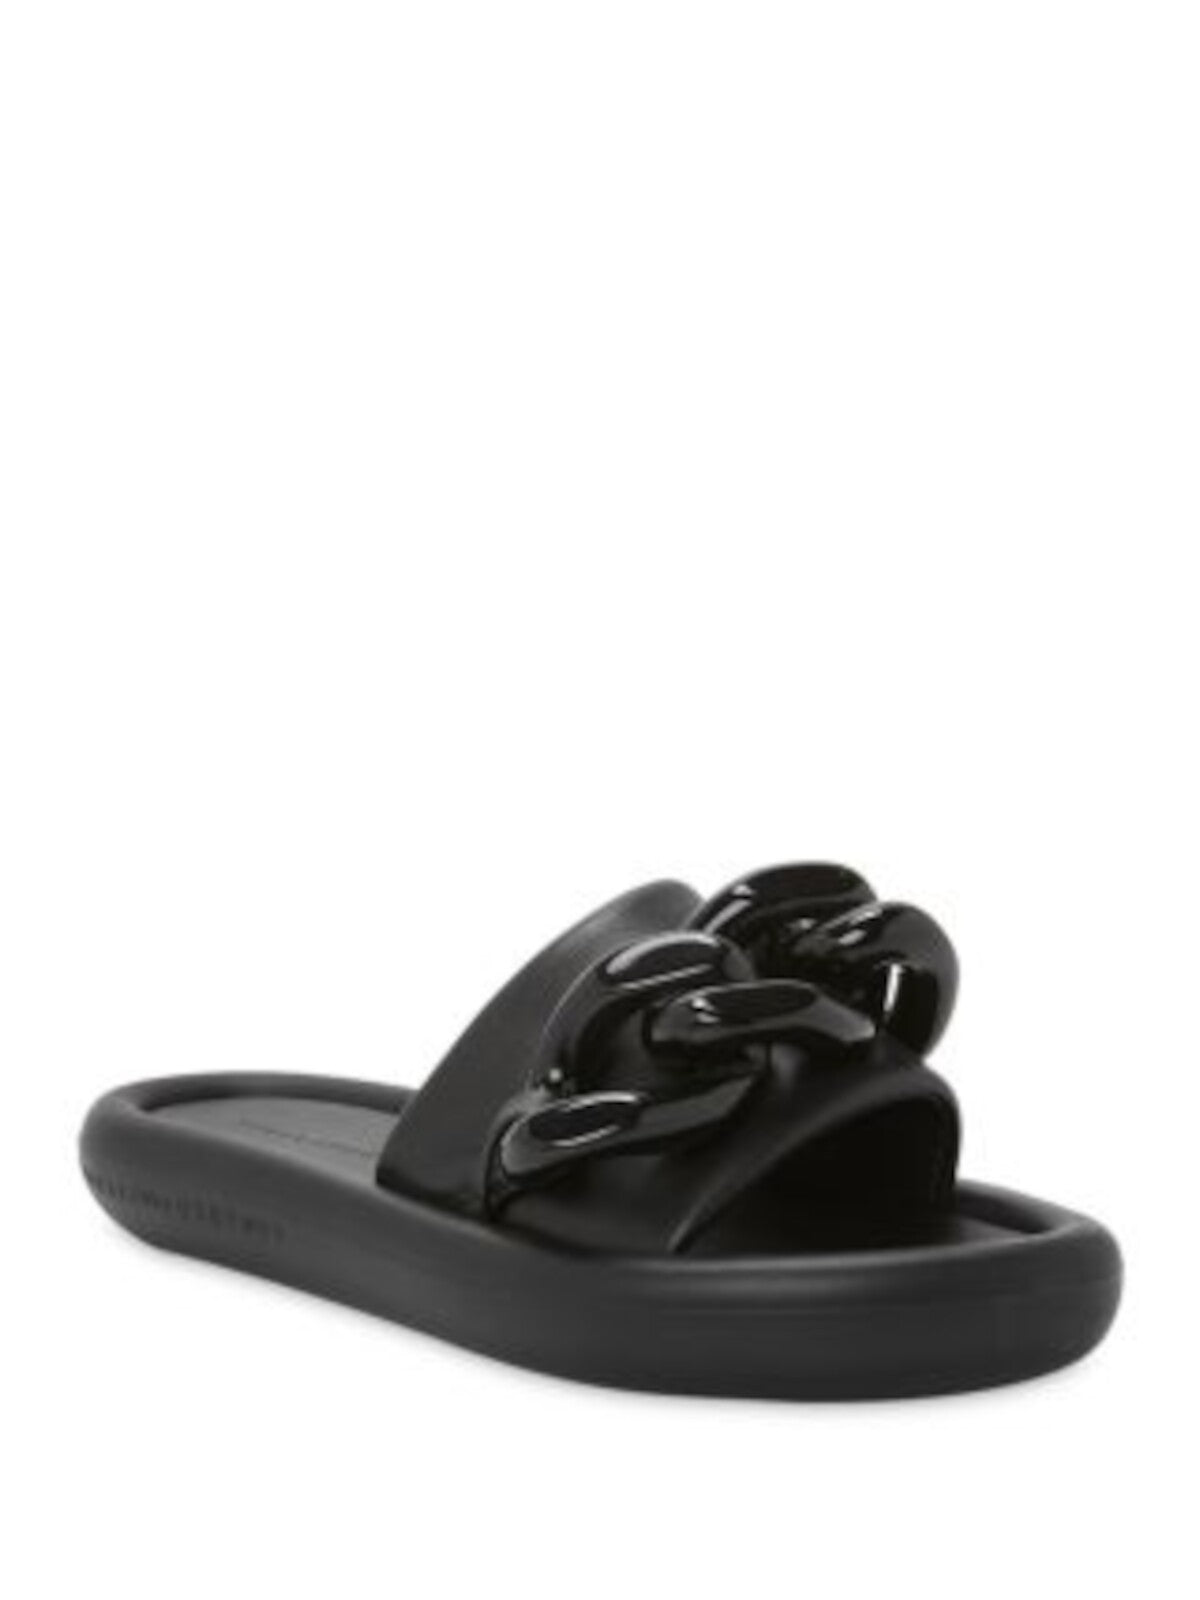 STELLAMCCARTNEY Womens Black Chain Detail Padded Air Slide Open Toe Platform Slide Sandals Shoes 36